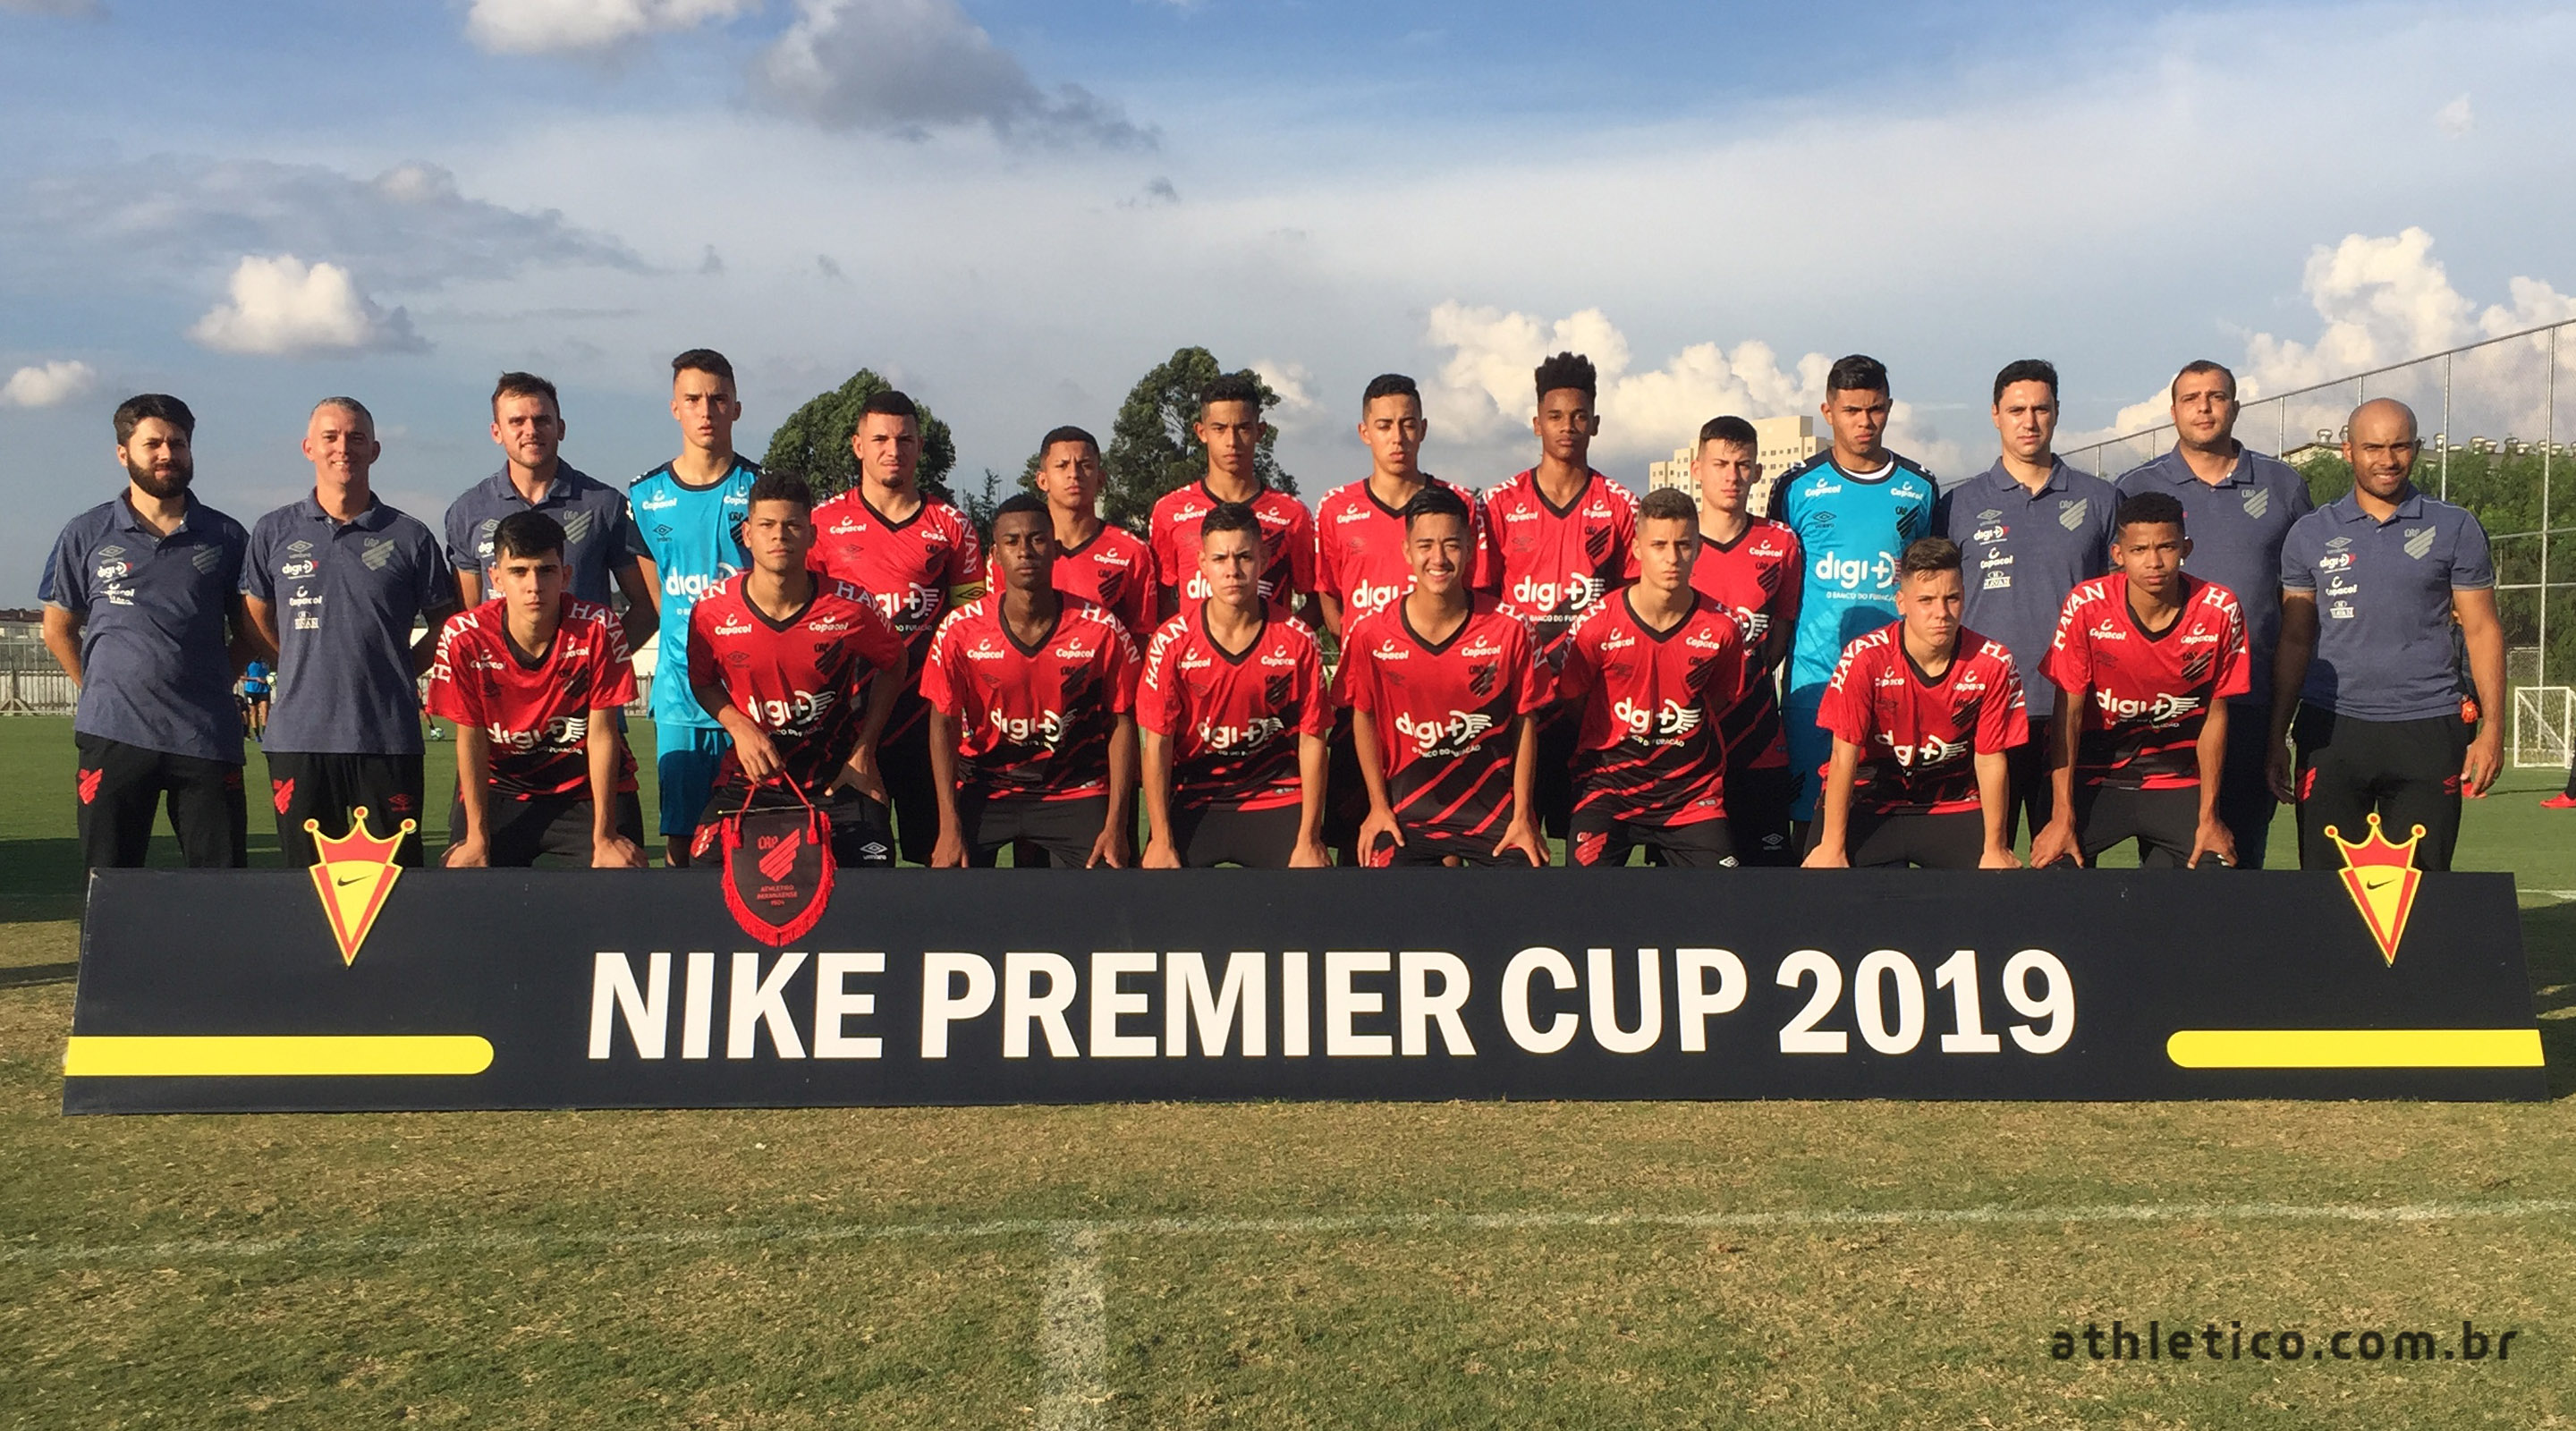 nike premier cup 2019 online -